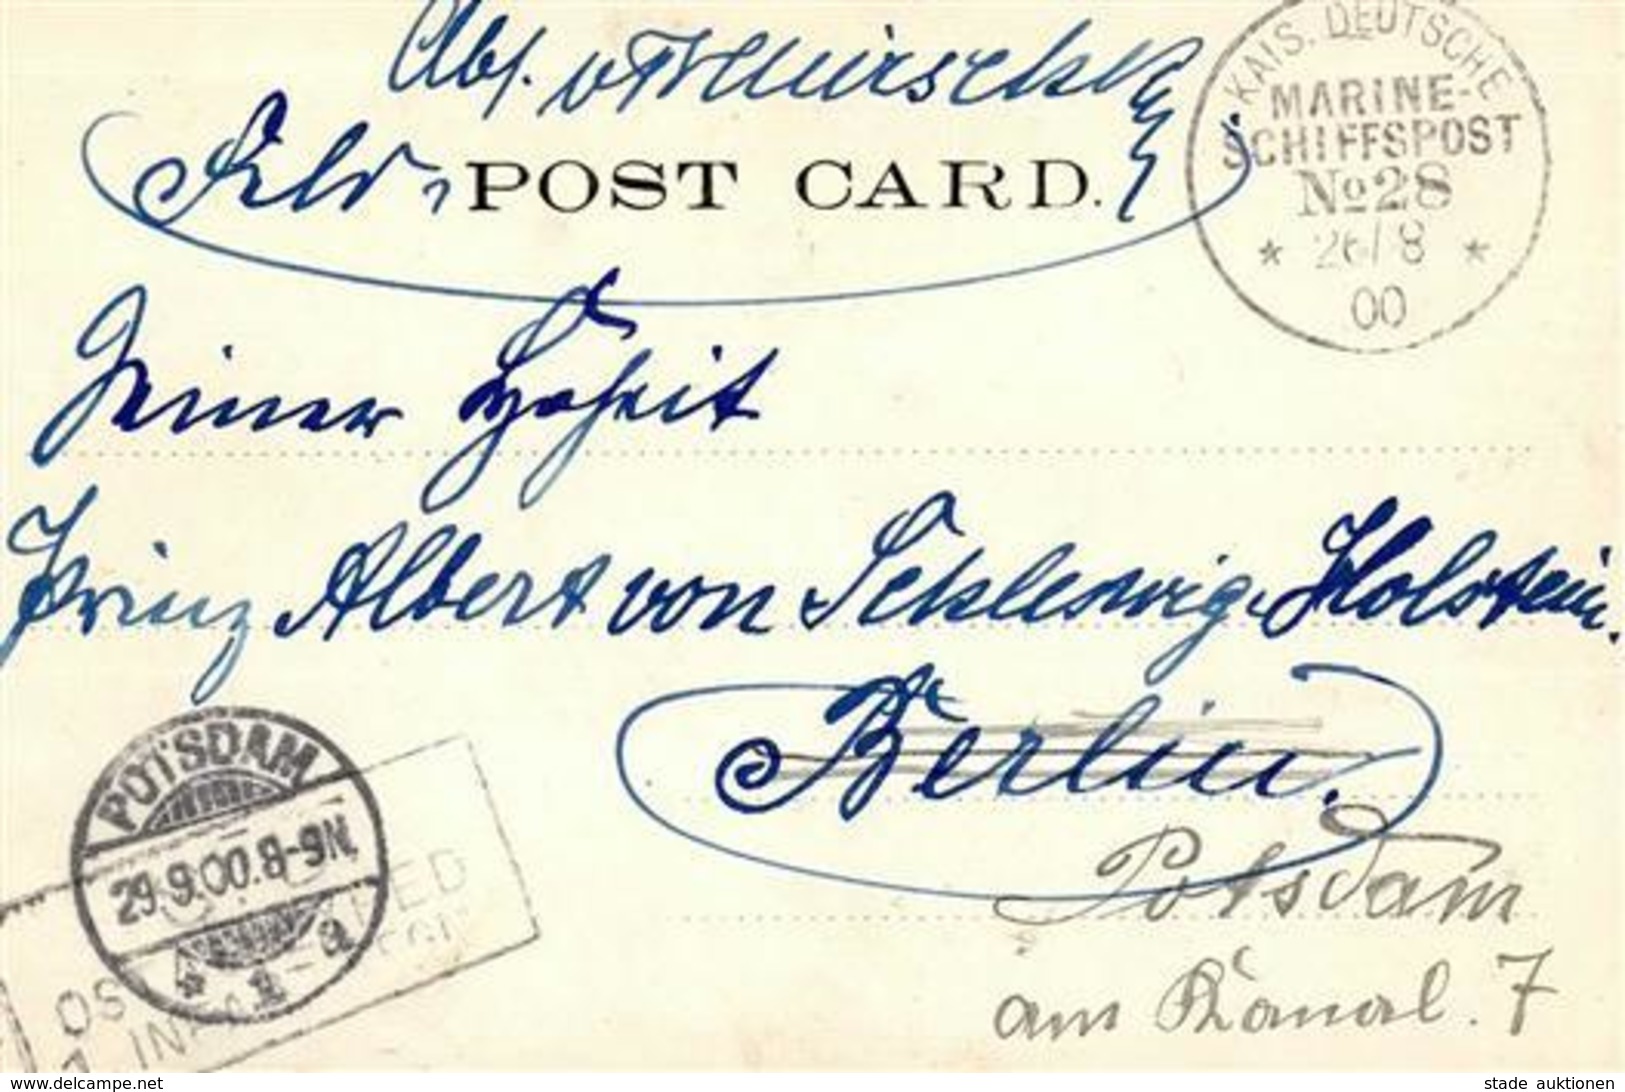 Deutsche Post China Kais. Deutsche Marine Schiffspost No. 28 26.8.00 Autograph Von Tschirschky, H Adressiert An Prinz Al - Histoire